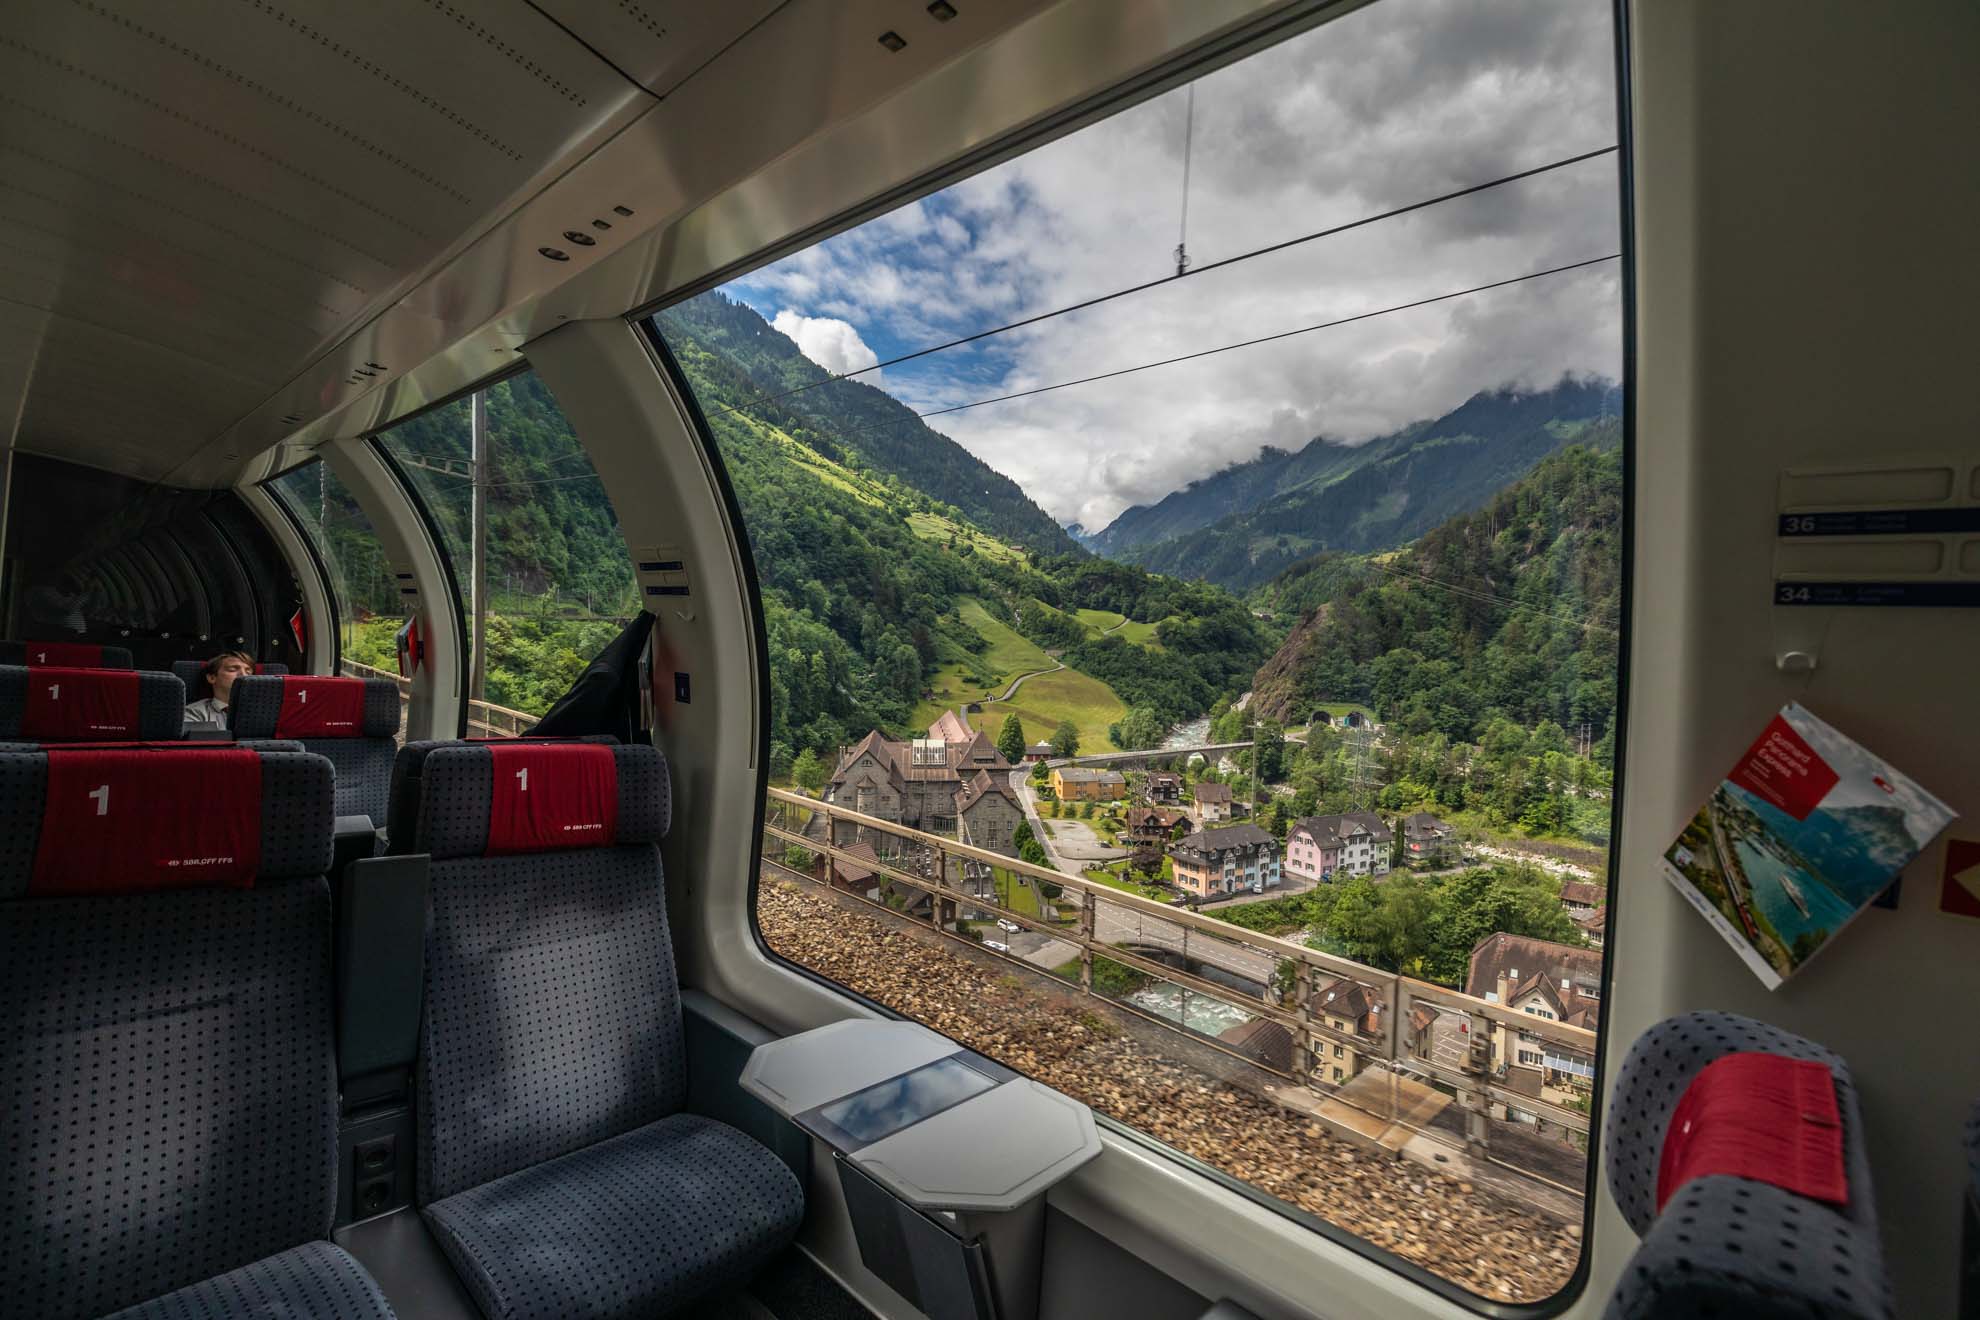 Szwajcaria; Szwajcaria pociągami; Grand Train Tour of Switzerland; najpiękniejsze trasy kolejowe w Szwajcarii; Ekspres Panoramiczny Gotarda; Gothard Panorama express; pociąg panoramiczny; pociągi panoramiczne Szwajcaria; przewodnik Szwajcaria; ebook Szwajcaria; 